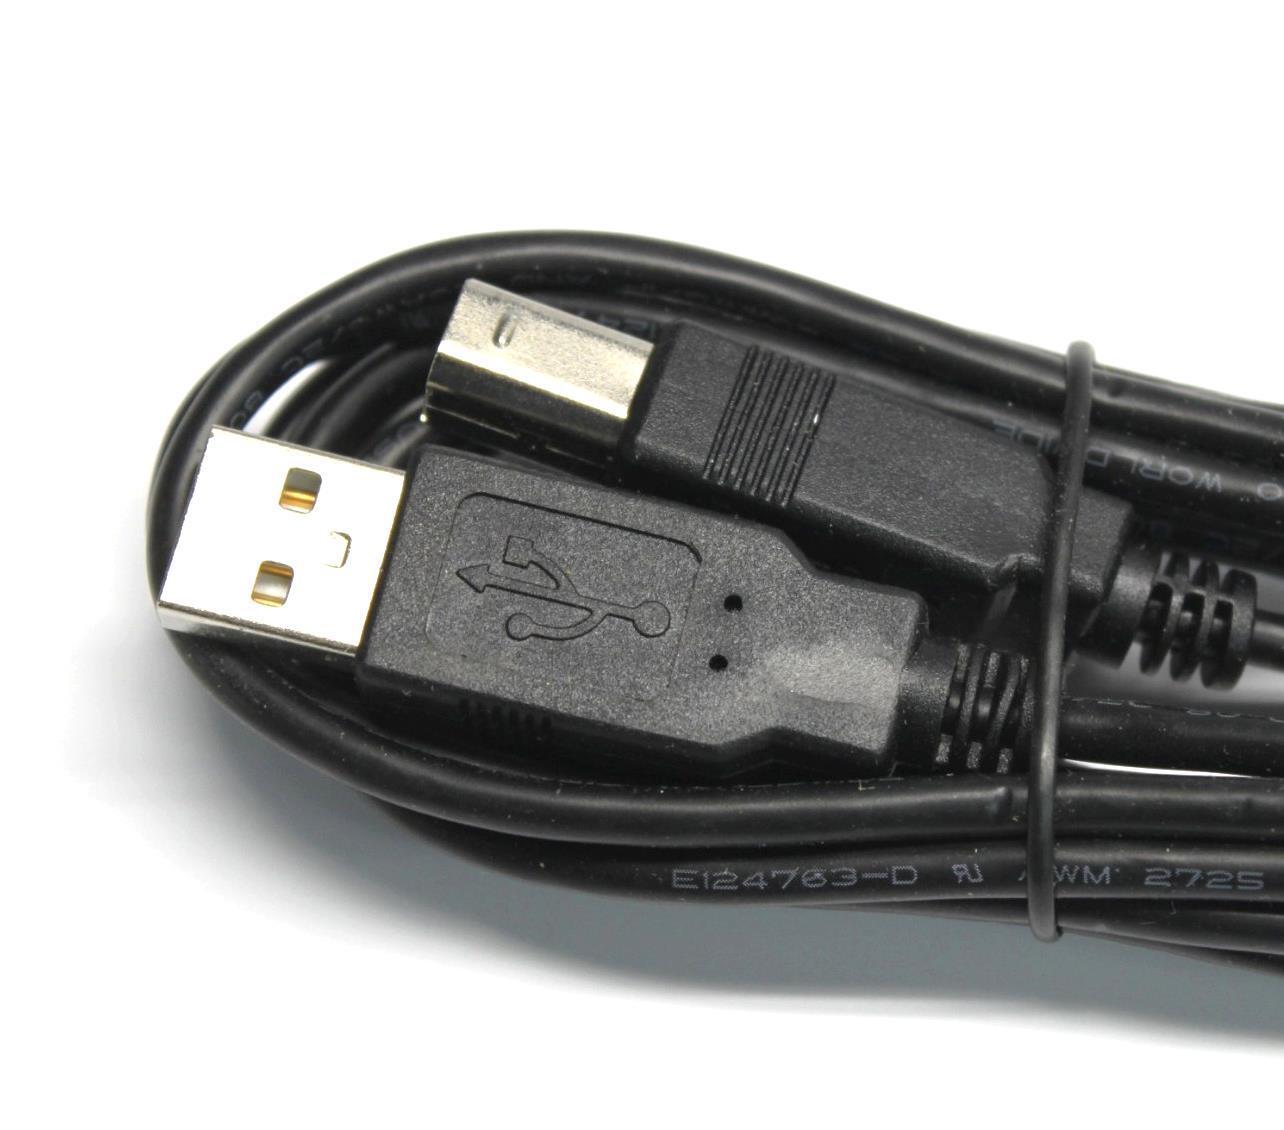 USB Cord Cable Printer Cord for Canon Maxify Printers